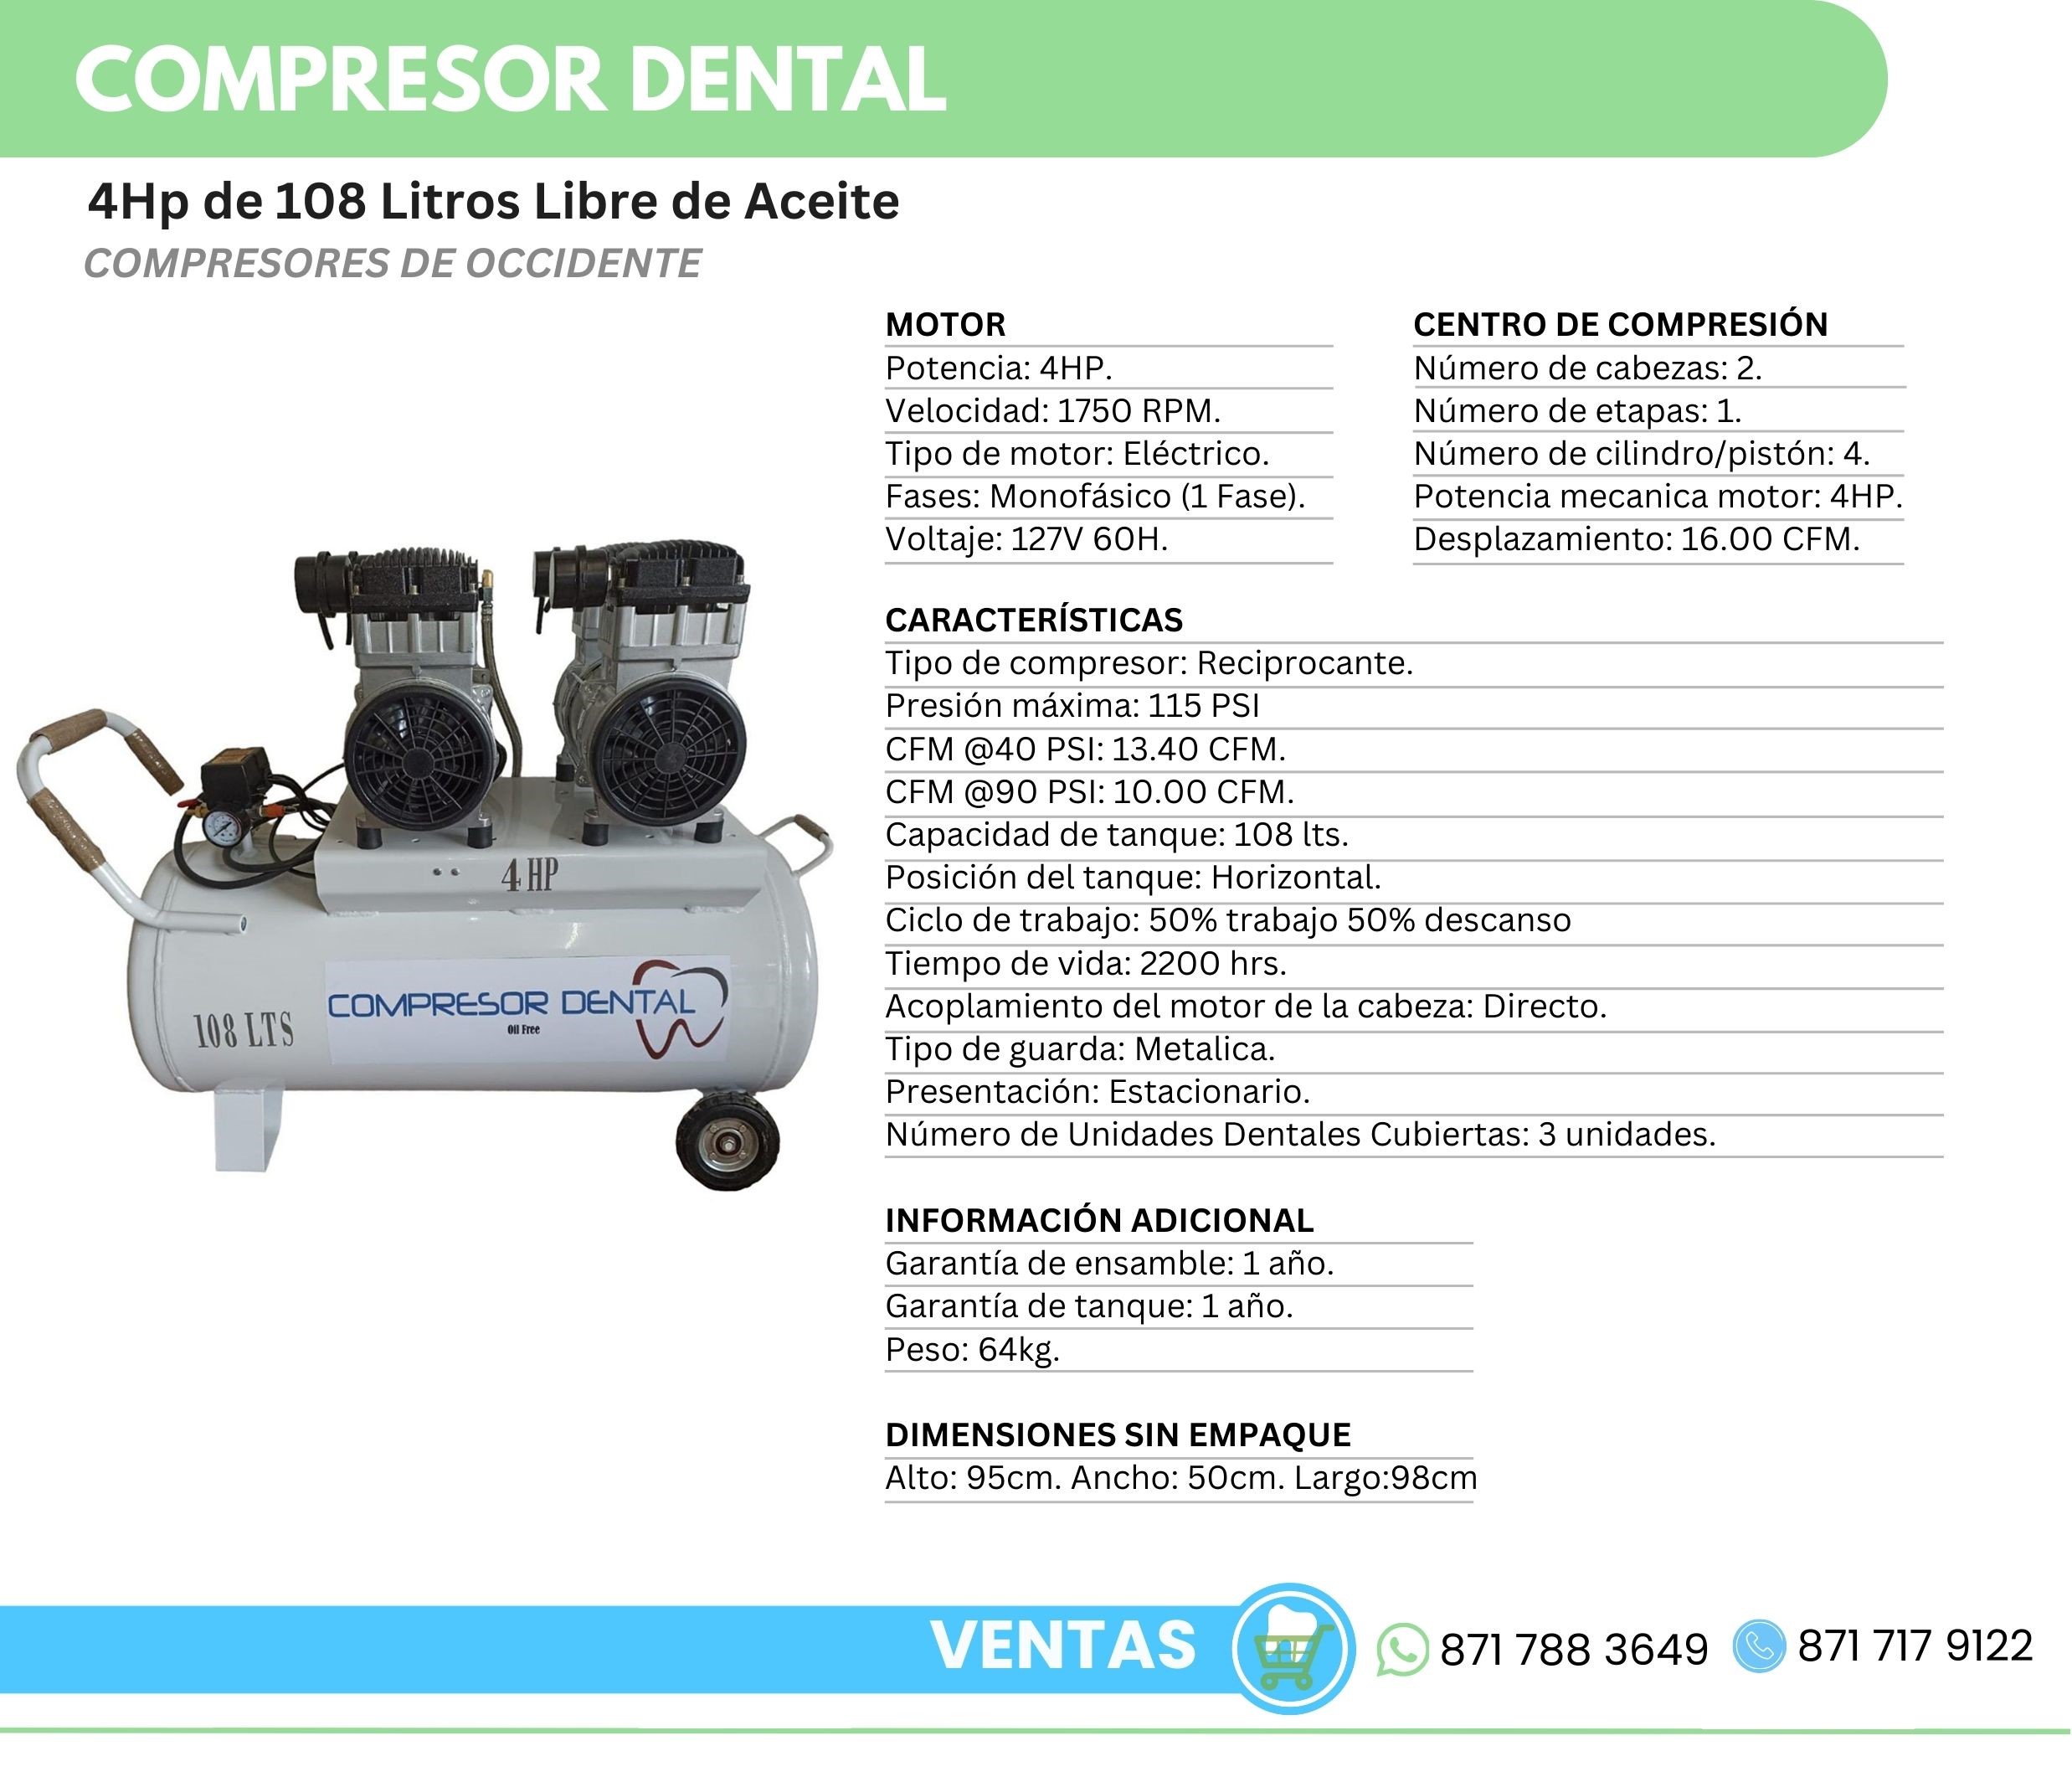 Compresor Dental 4Hp 108 Litros Libre de Aceite Compresores de Occidente Orthosign